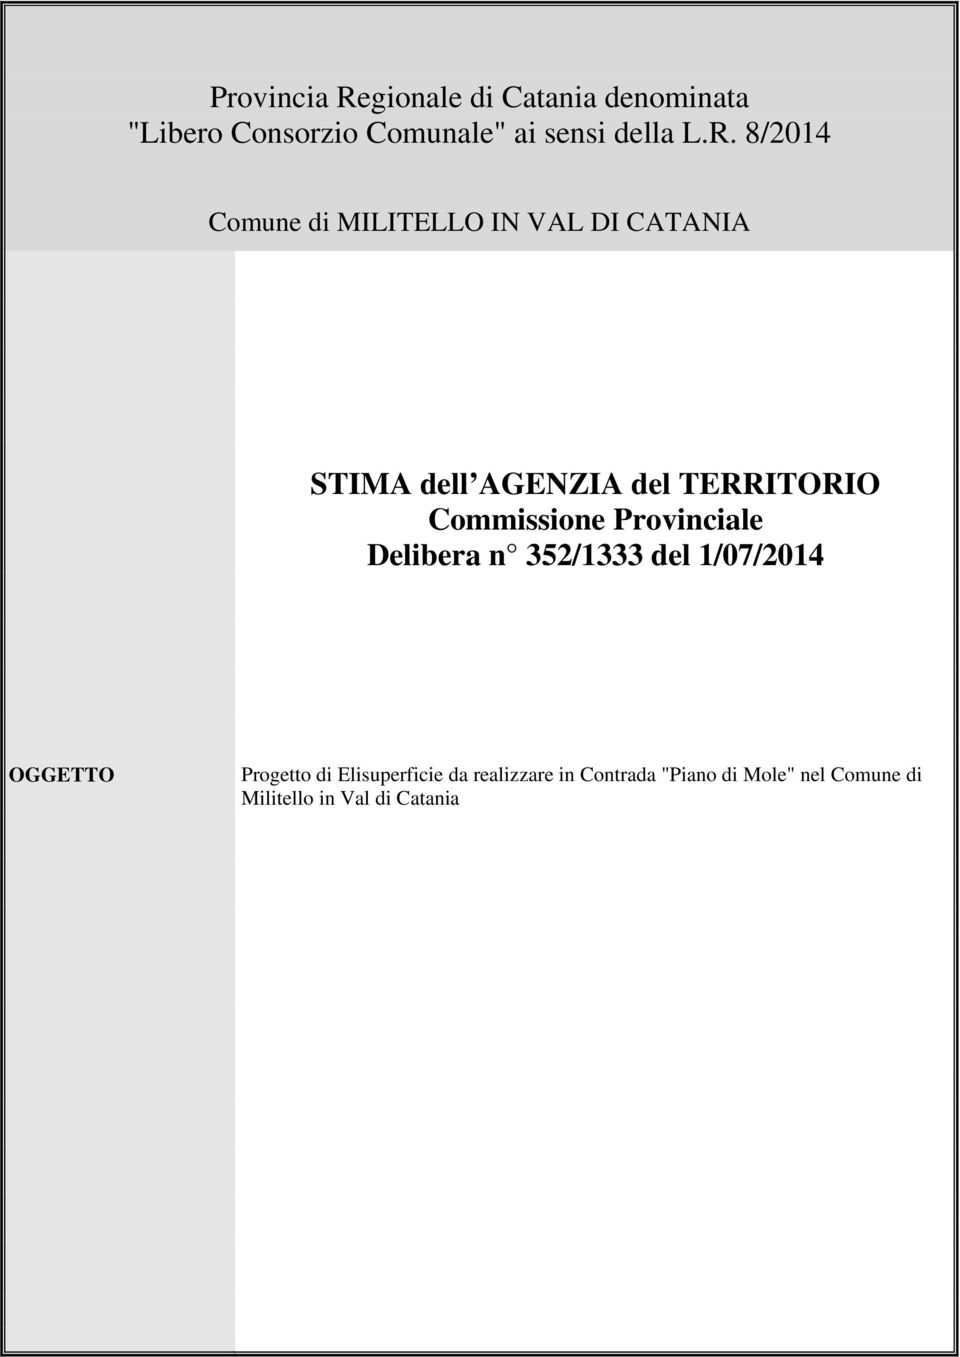 Commissione Provinciale Delibera n 352/1333 del 1/07/2014 OGGETTO Progetto di